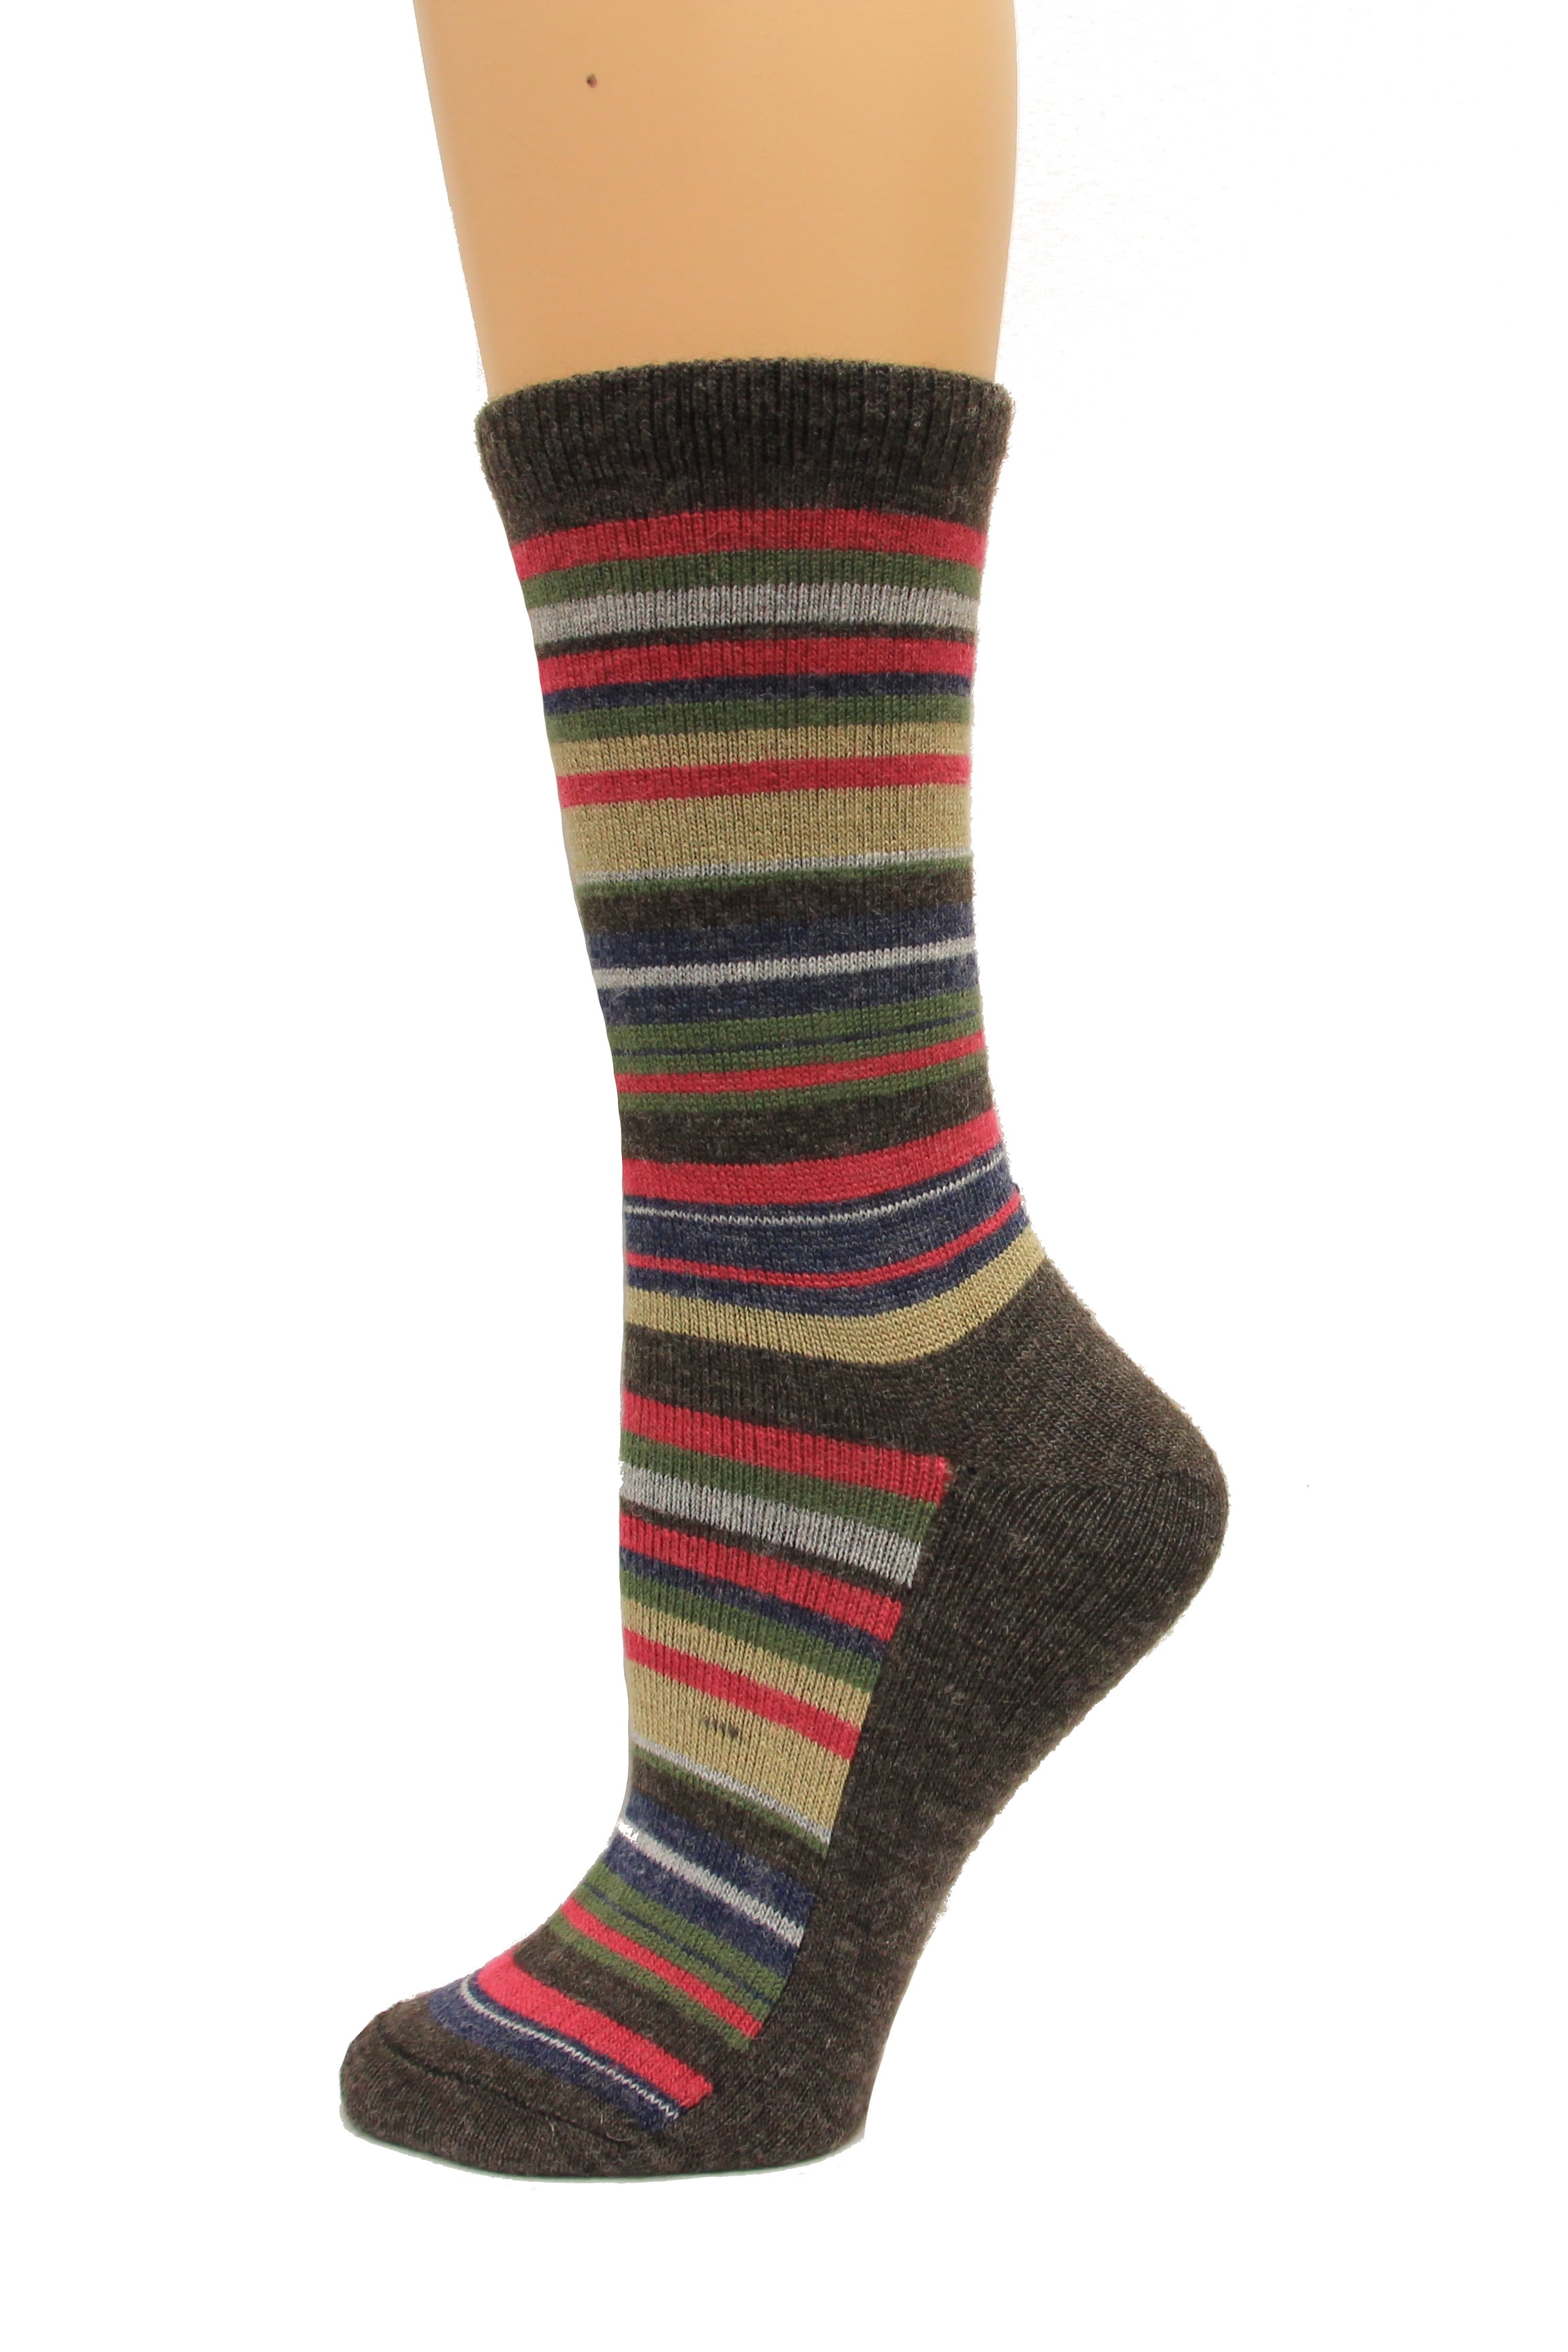 Wise Blend - Wise Blend Large Stripe Crew Socks, 1 Pair, Brown, Medium ...